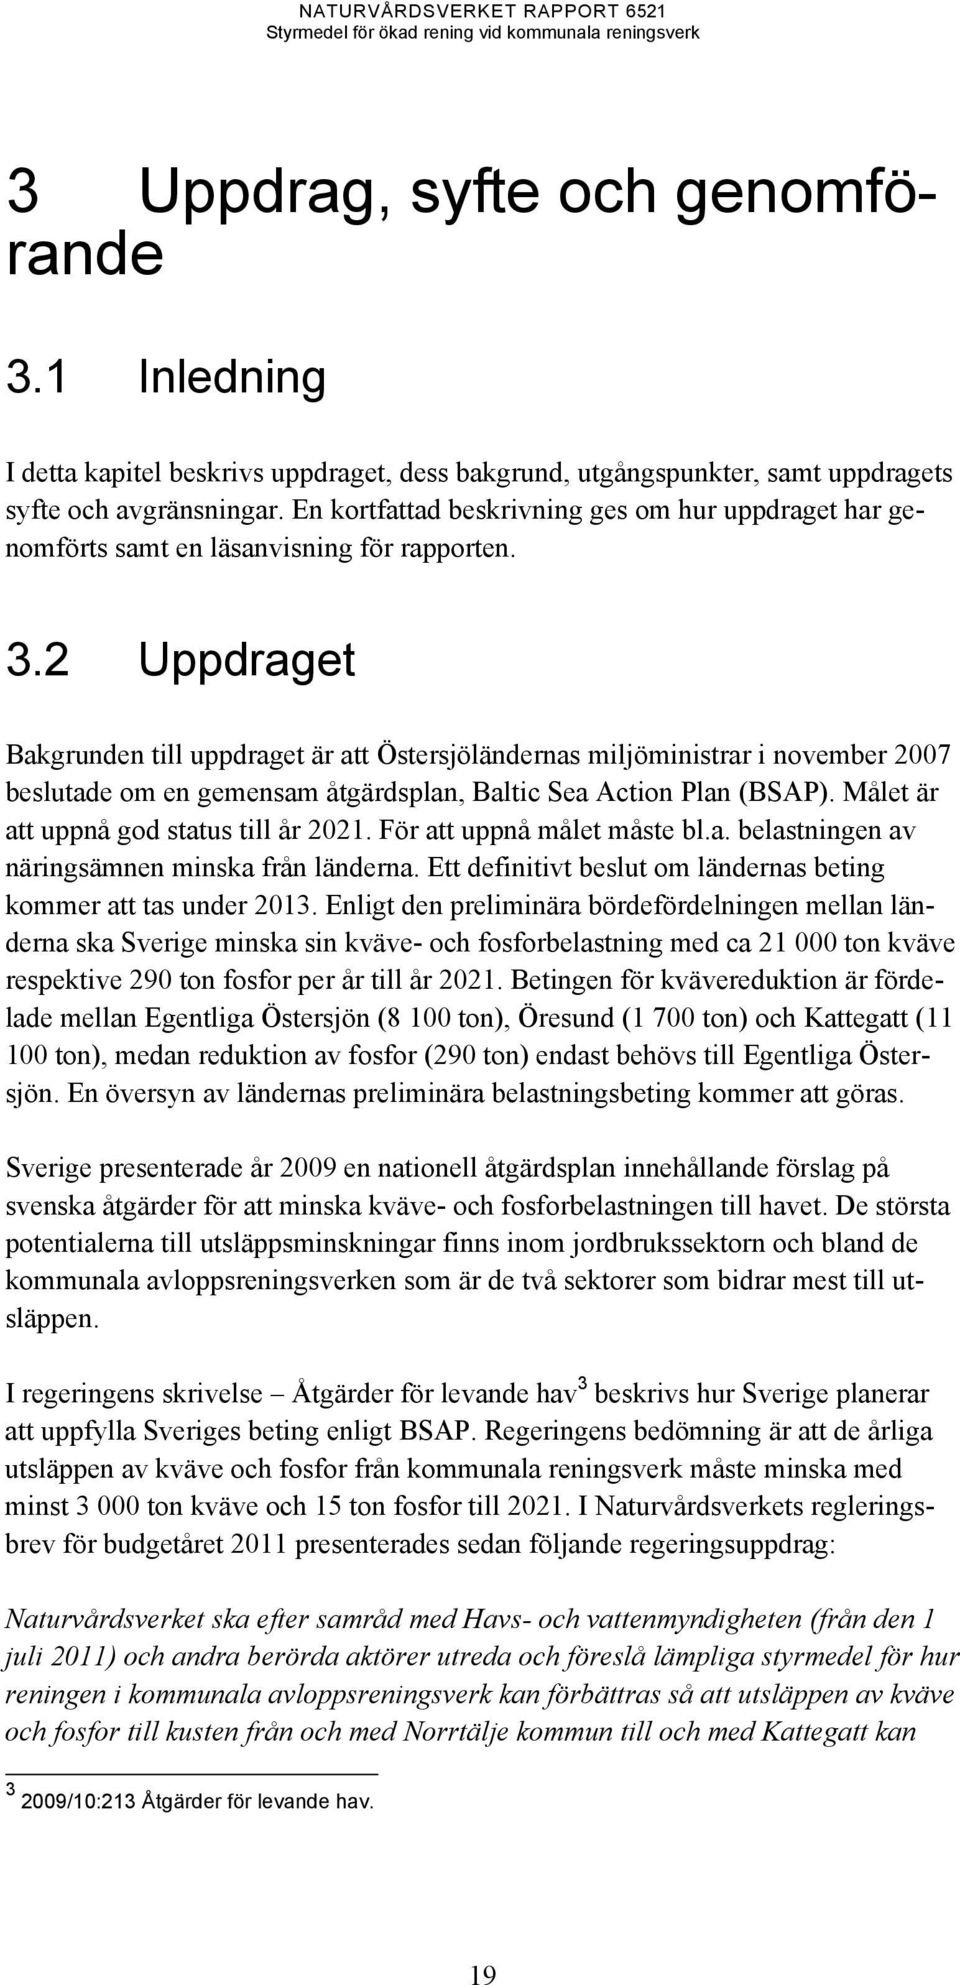 2 Uppdraget Bakgrunden till uppdraget är att Östersjöländernas miljöministrar i november 2007 beslutade om en gemensam åtgärdsplan, Baltic Sea Action Plan (BSAP).